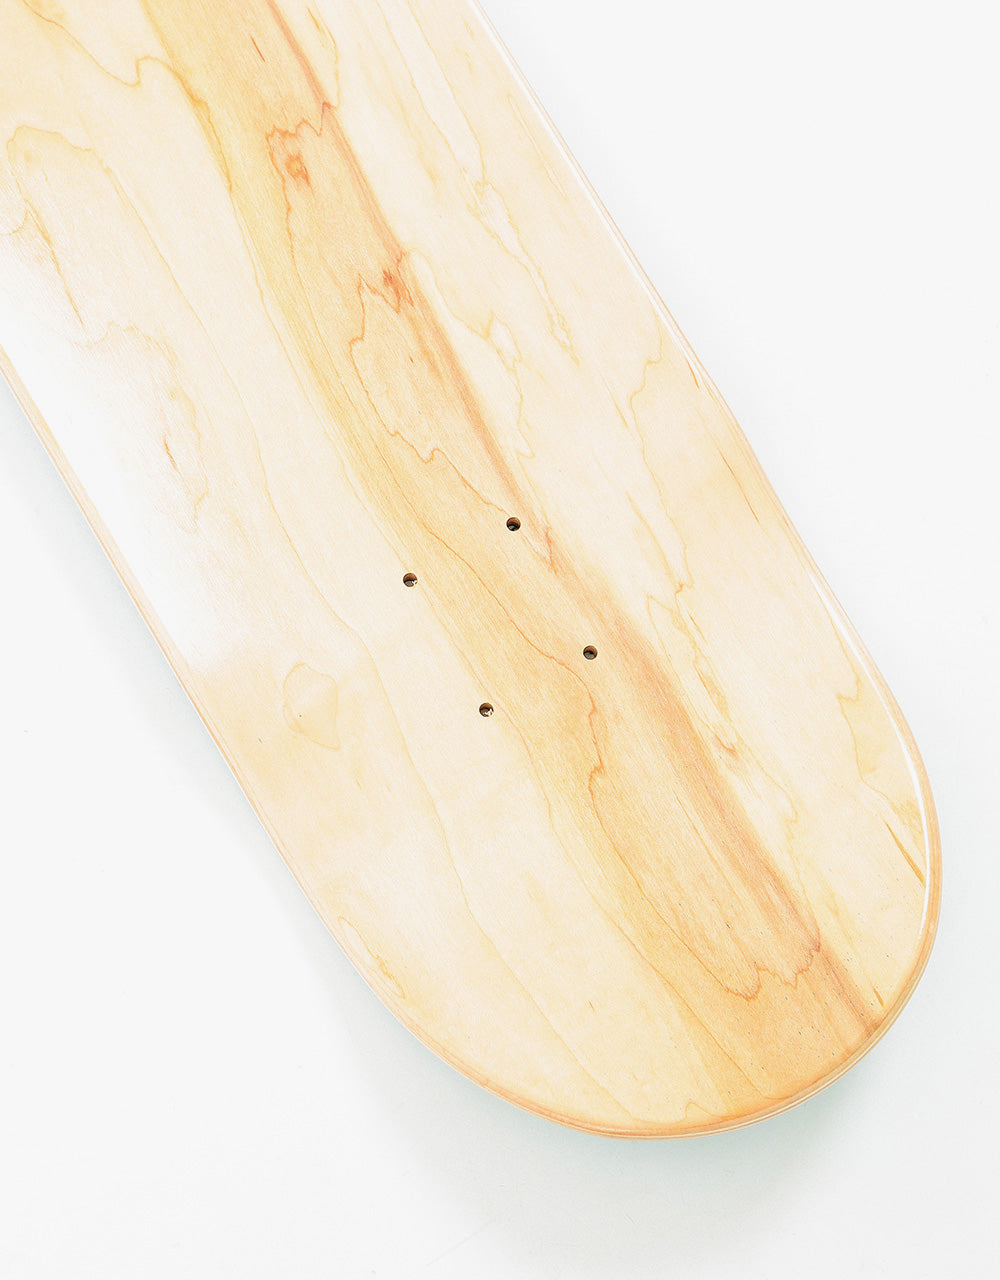 Route One Mini Logo 'OG Shape' Skateboard Deck - Turquoise/White